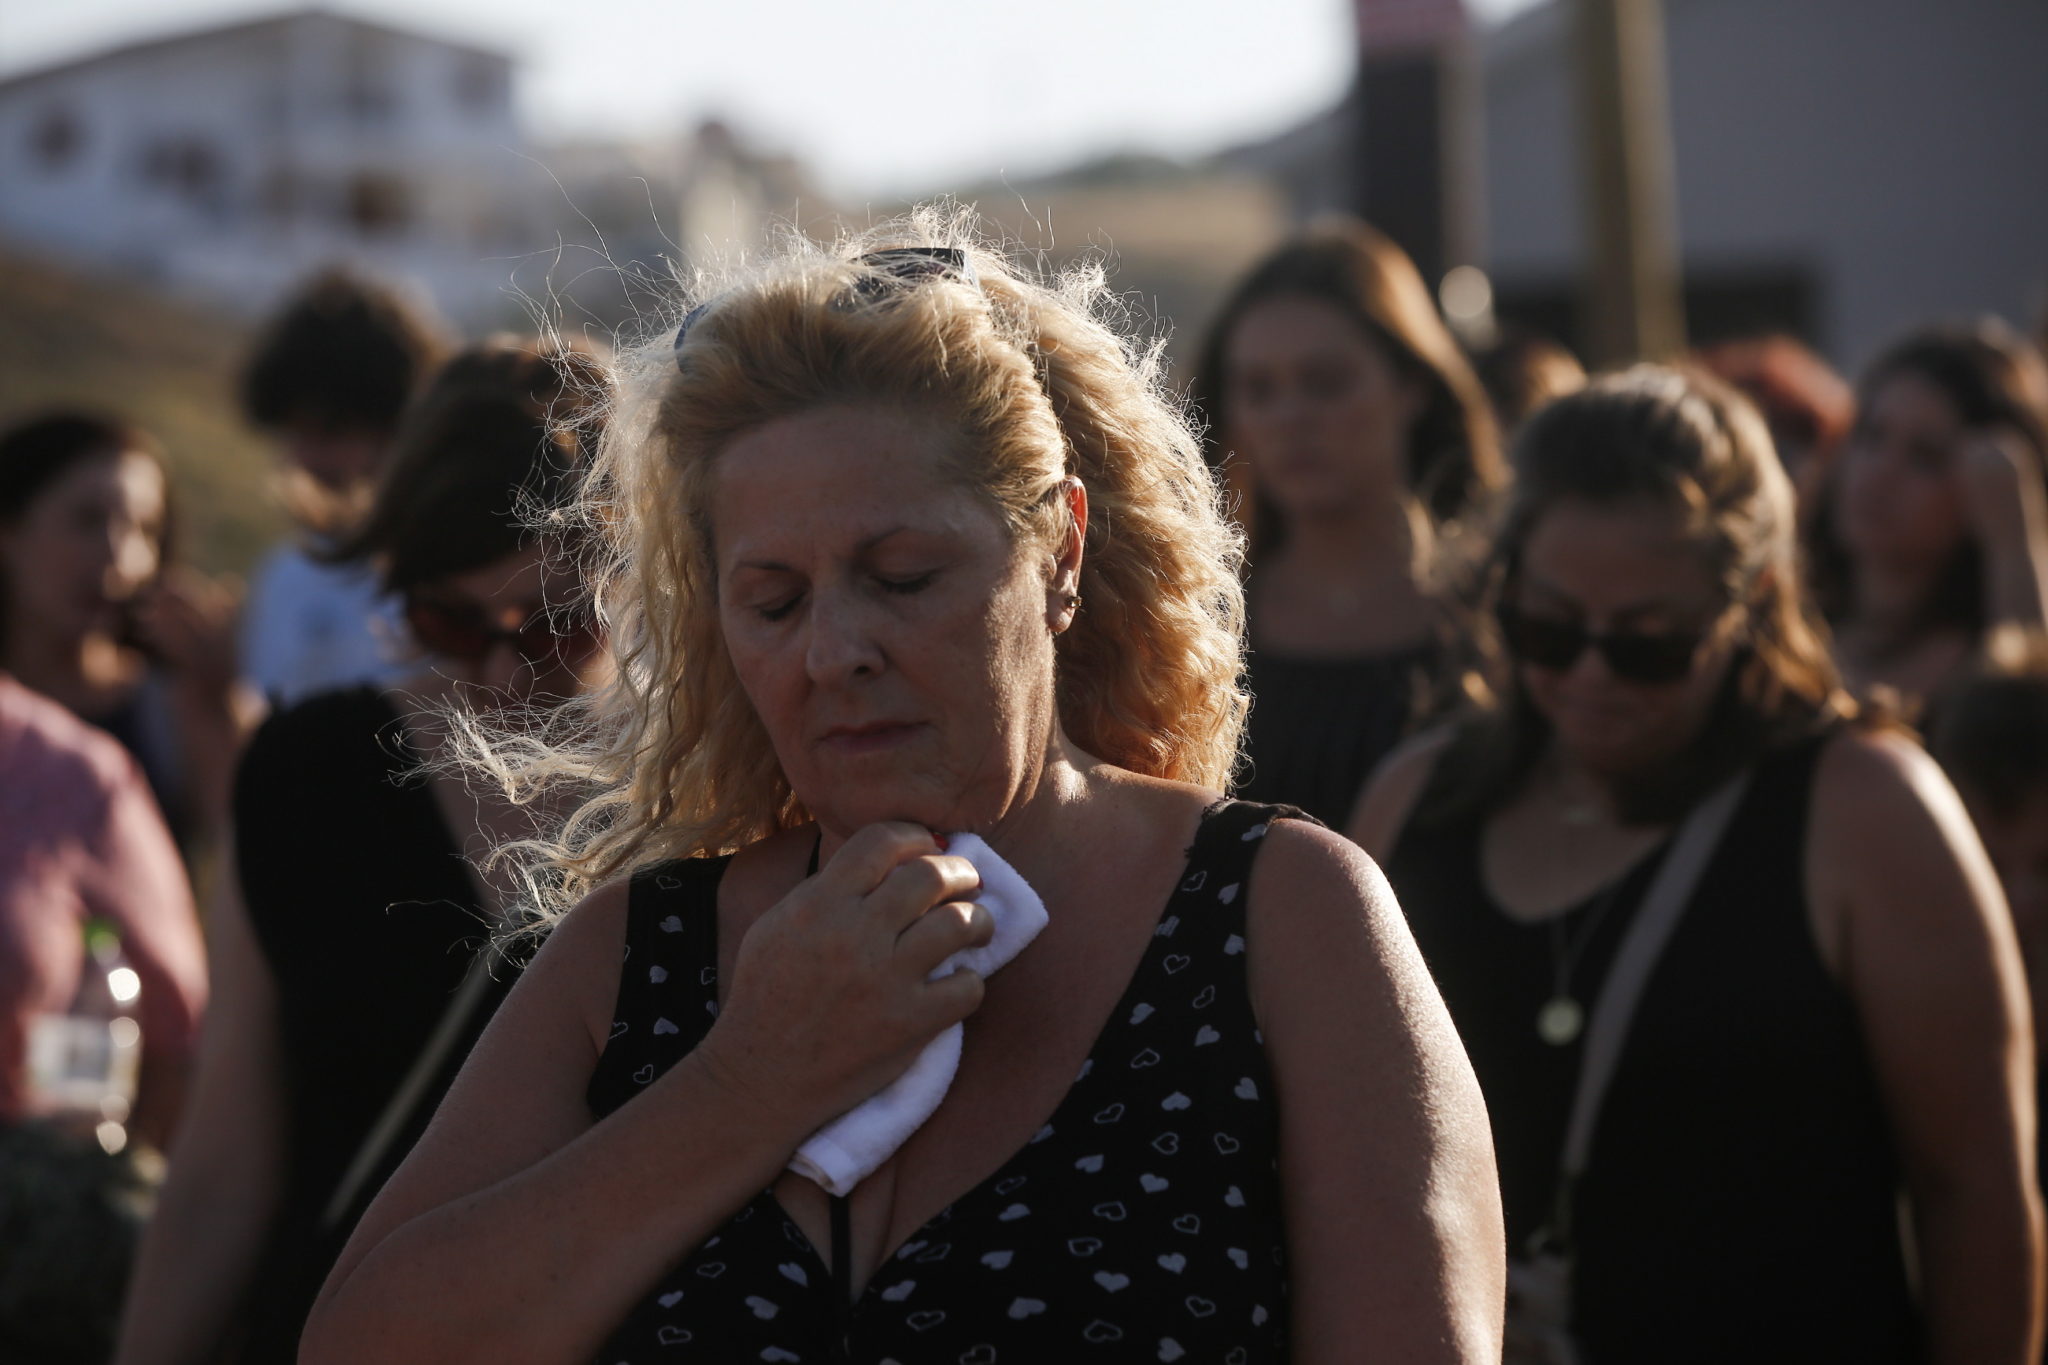 Ludzie i krewni ofiar idą w kierunku nadmorskiej wioski Mati, aby uczestniczyć w nabożeństwie żałobnym rok po śmiertelnym pożarze lasu, który zabił 102 osoby w Neos Voutzas, na północny zachód od Aten